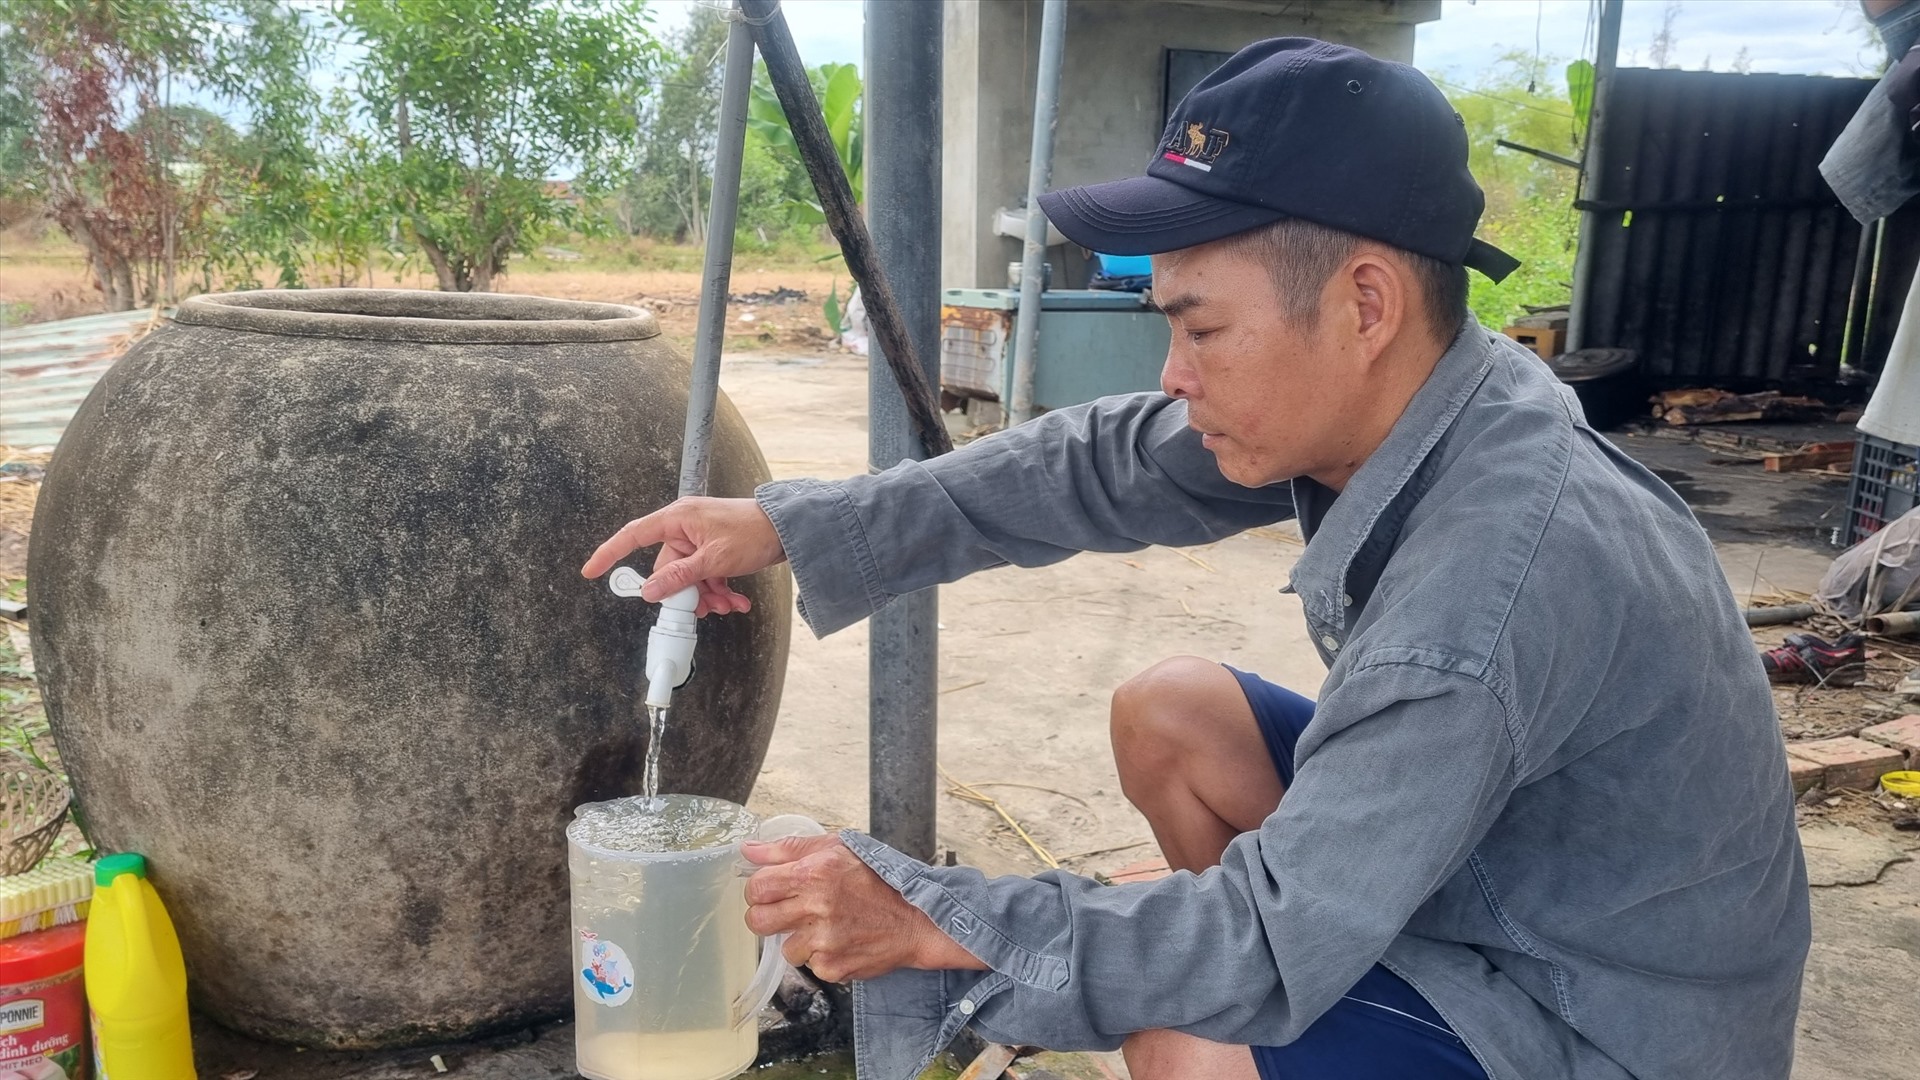 Việc người dân sử dụng nước nhiễm phèn dù đã về nơi tái định cư mới là thực tế bất cập, tồn tại kéo dài ở các khu TĐC trên địa bàn huyện Duy Xuyên, Quảng Nam hiện nay. Ảnh Hoàng Bin